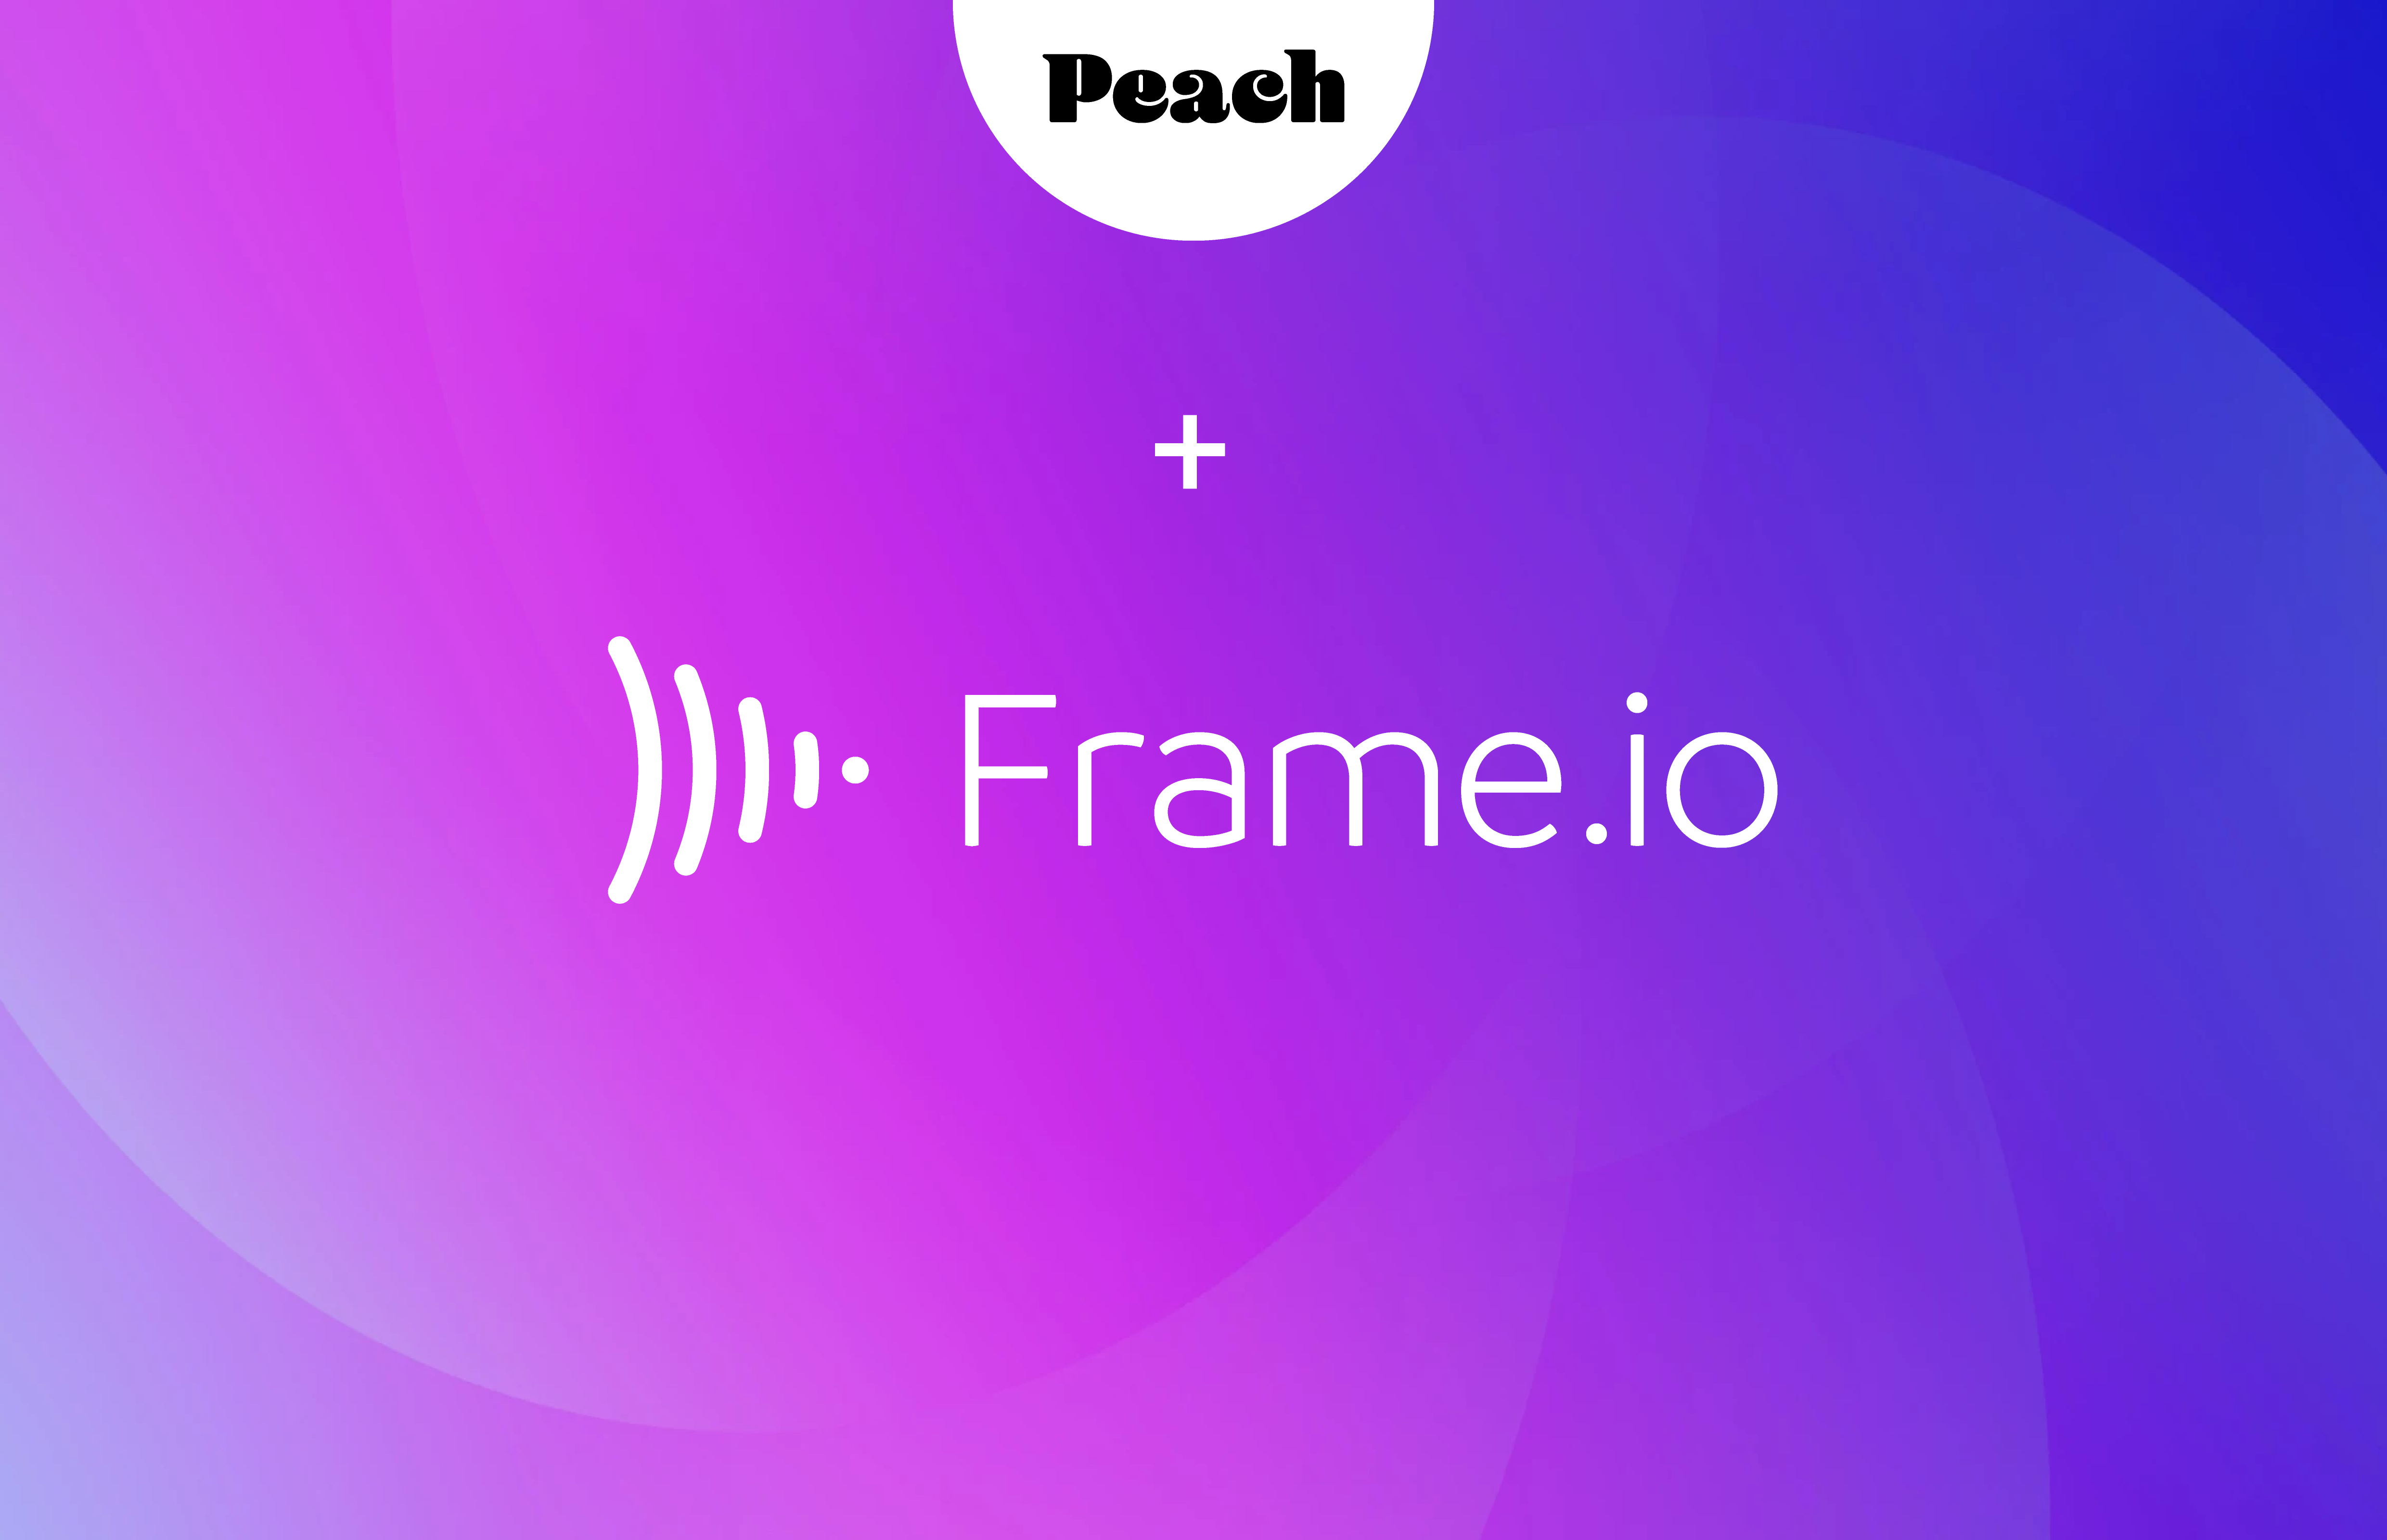 Peach + Frame.io